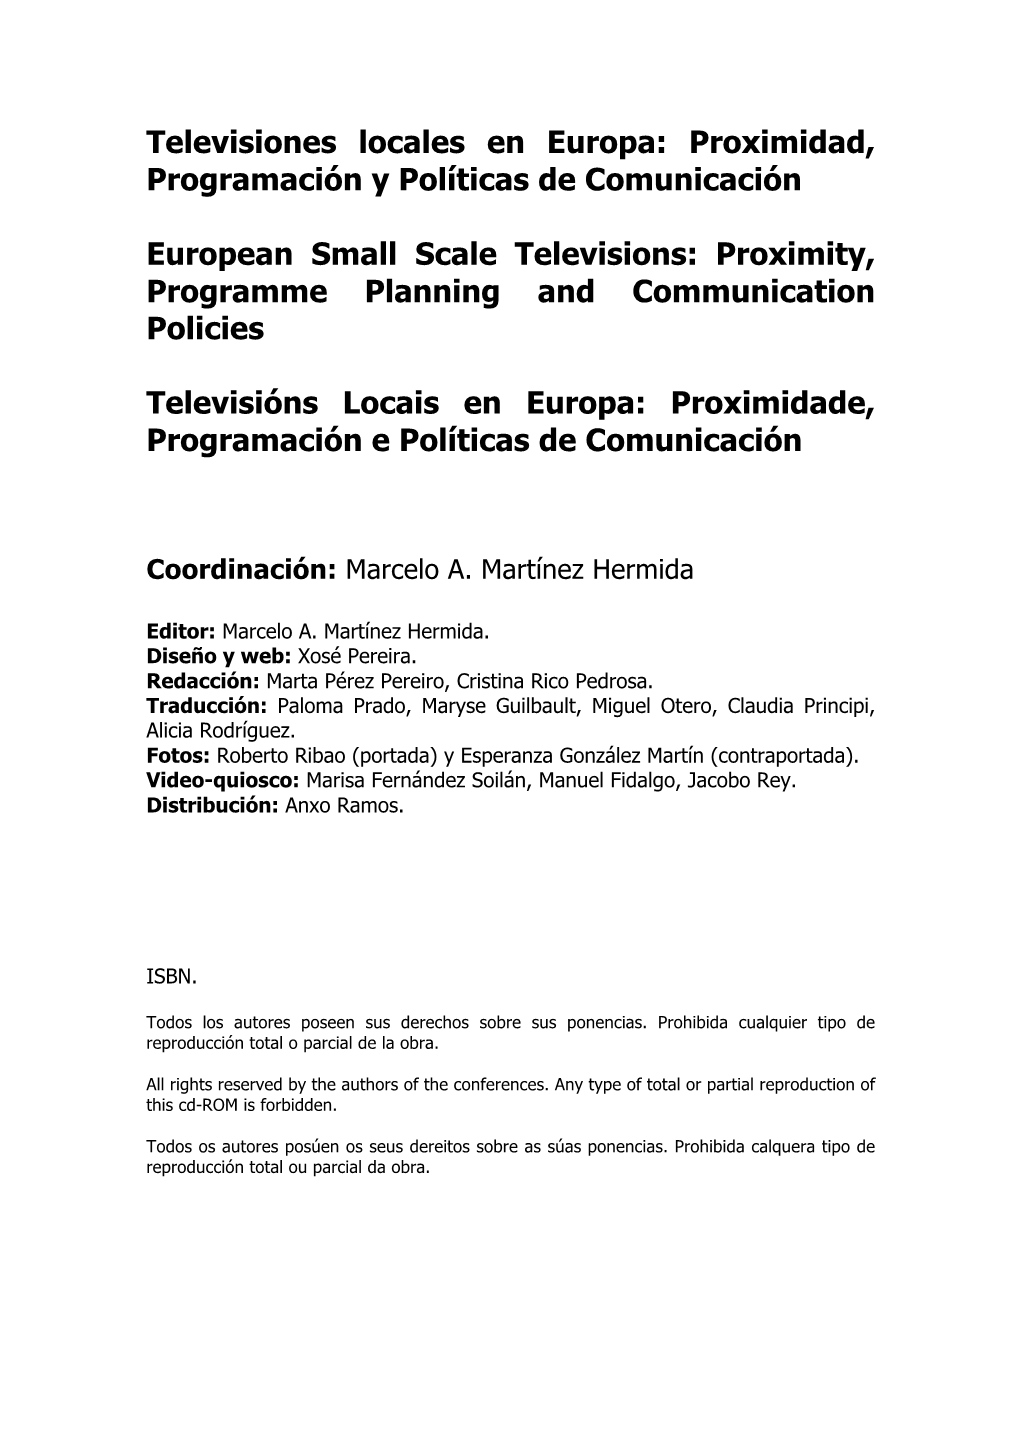 Televisiones Locales En Europa: Proximidad, Programación Y Políticas De Comunicación